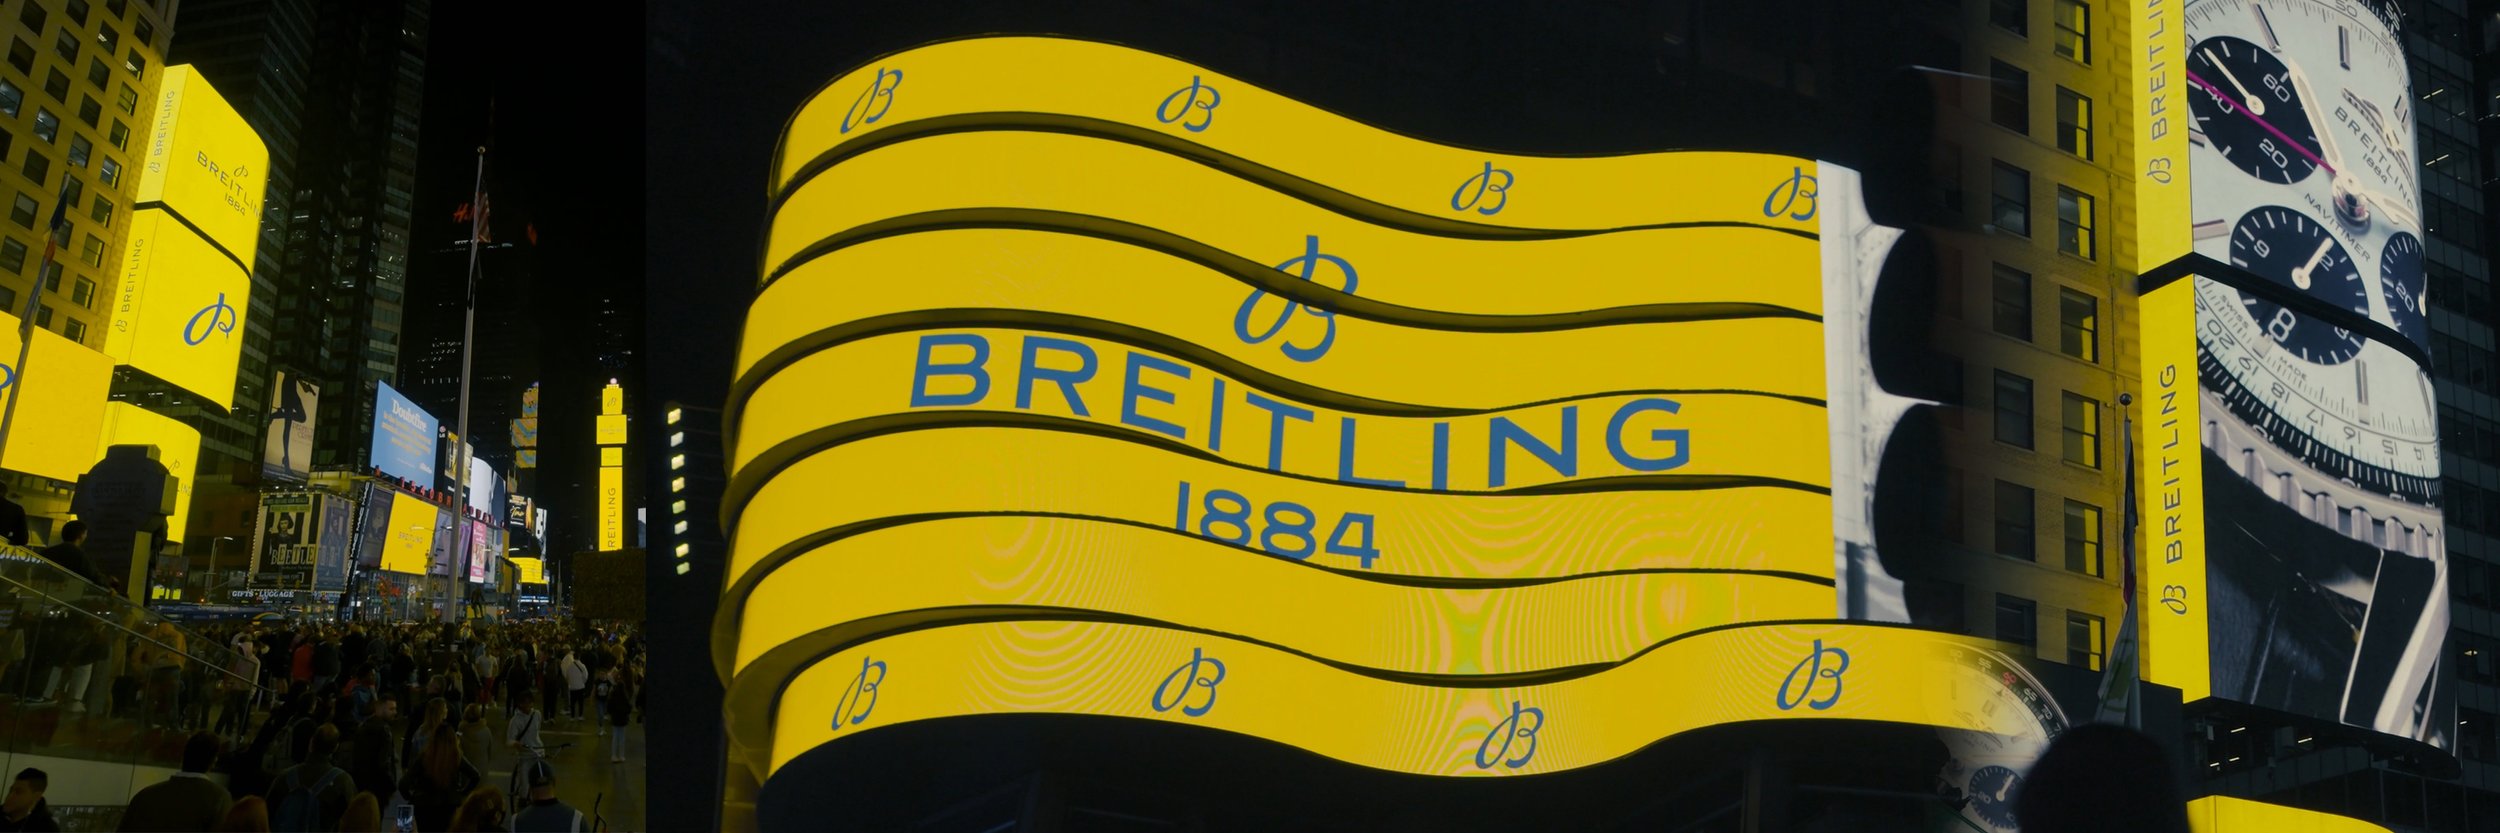 Breitlings2b_16.jpg